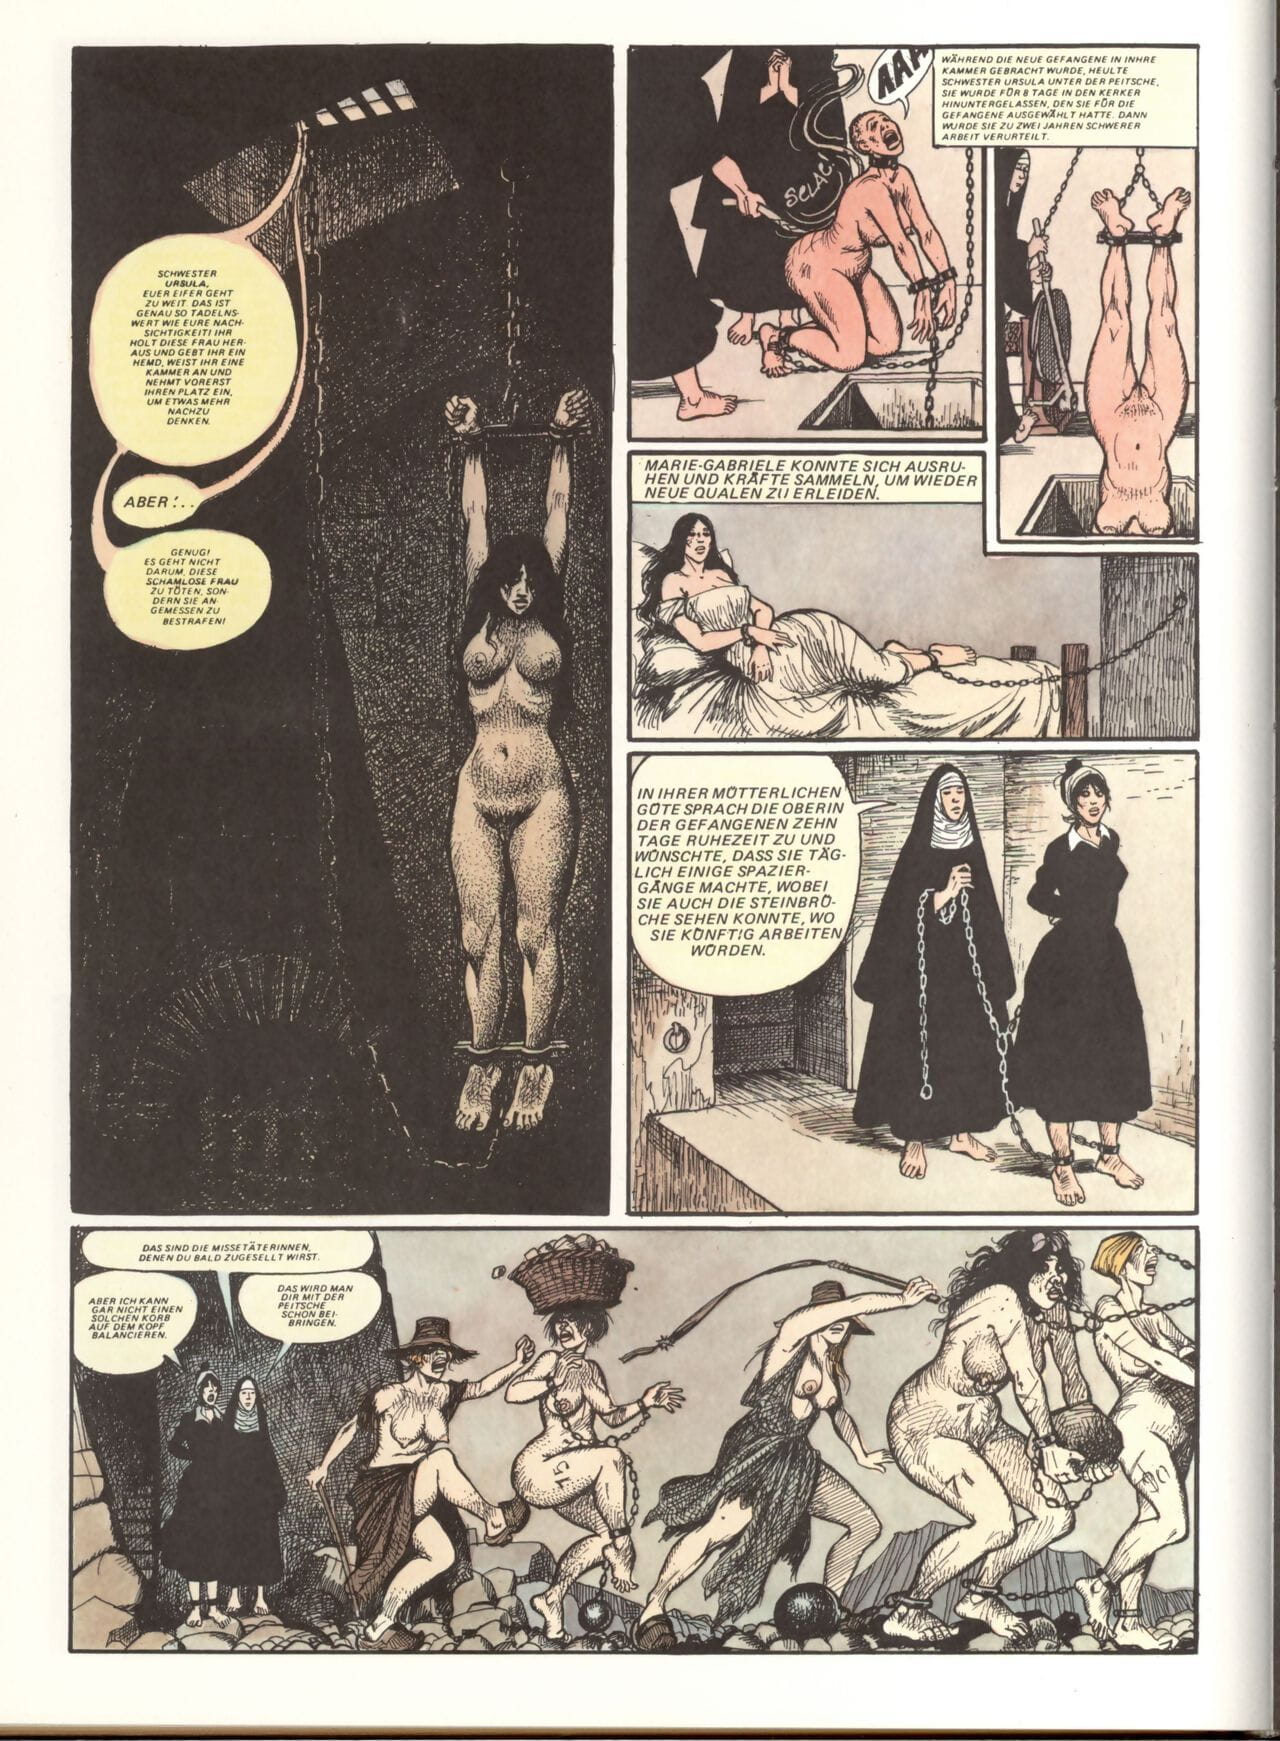 Marie Gabrielle De San eutropo #02 parte 3 page 1